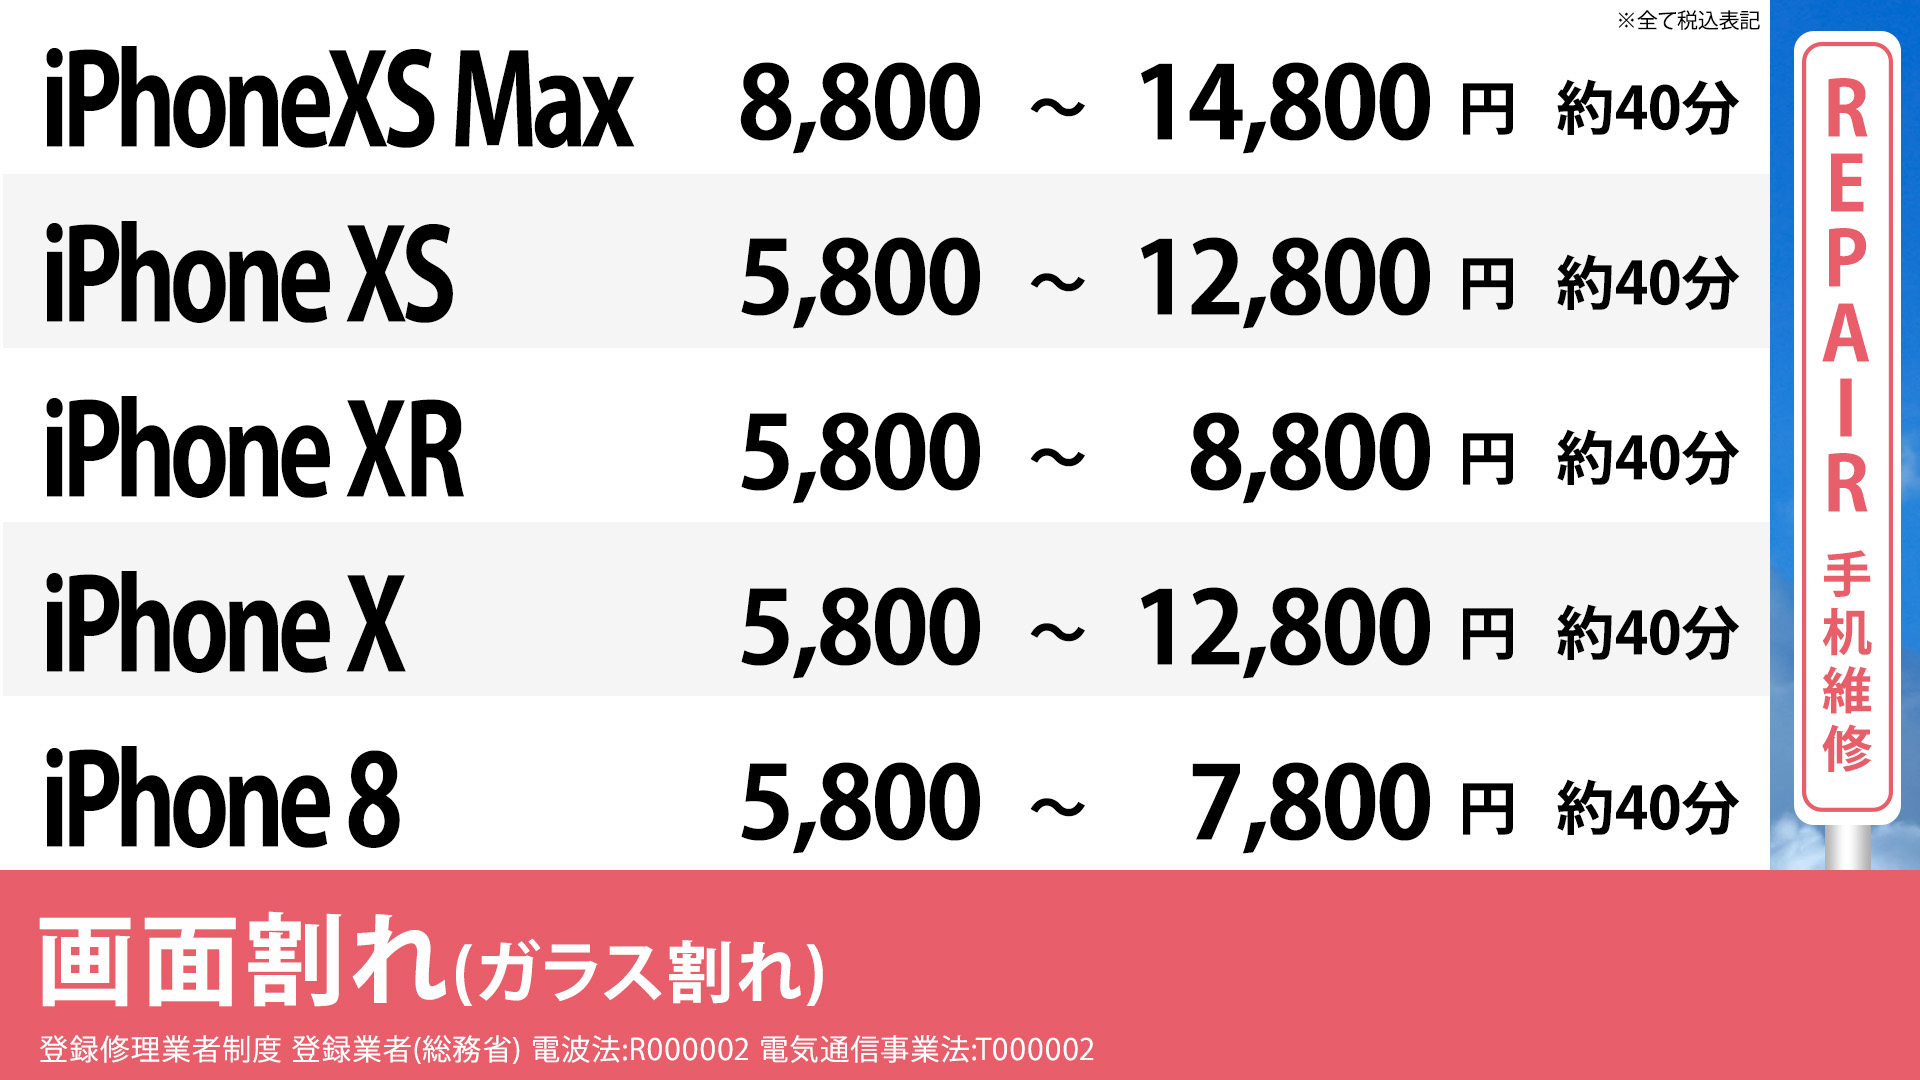 梅田大阪駅前店のiPhoneXSMax ,XS,XR,Xの通常修理の画面修理の料金表です。